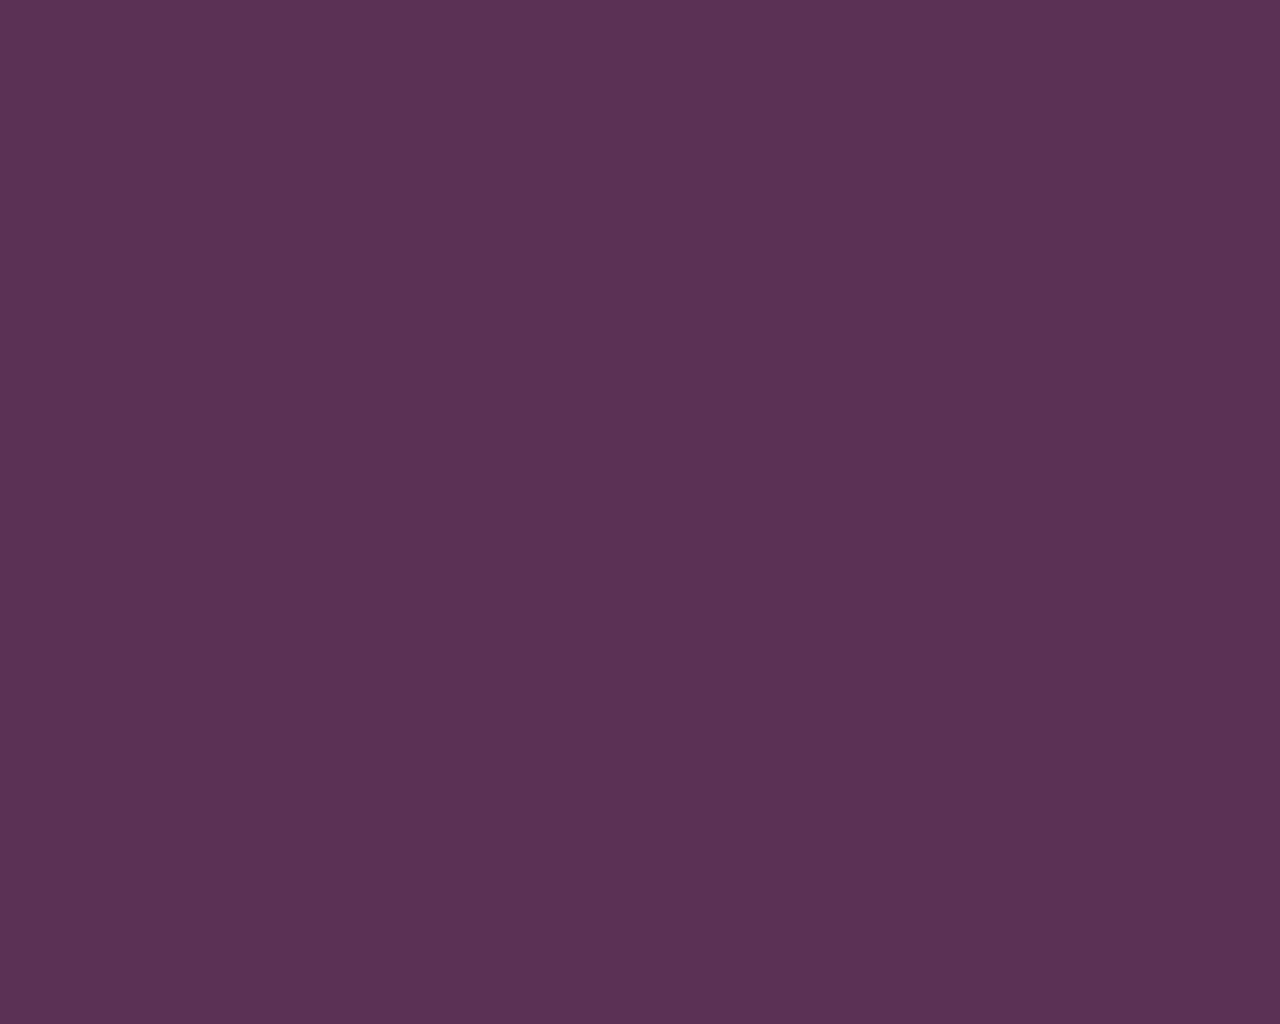 1280x1024 Japanese Violet Solid Color Background